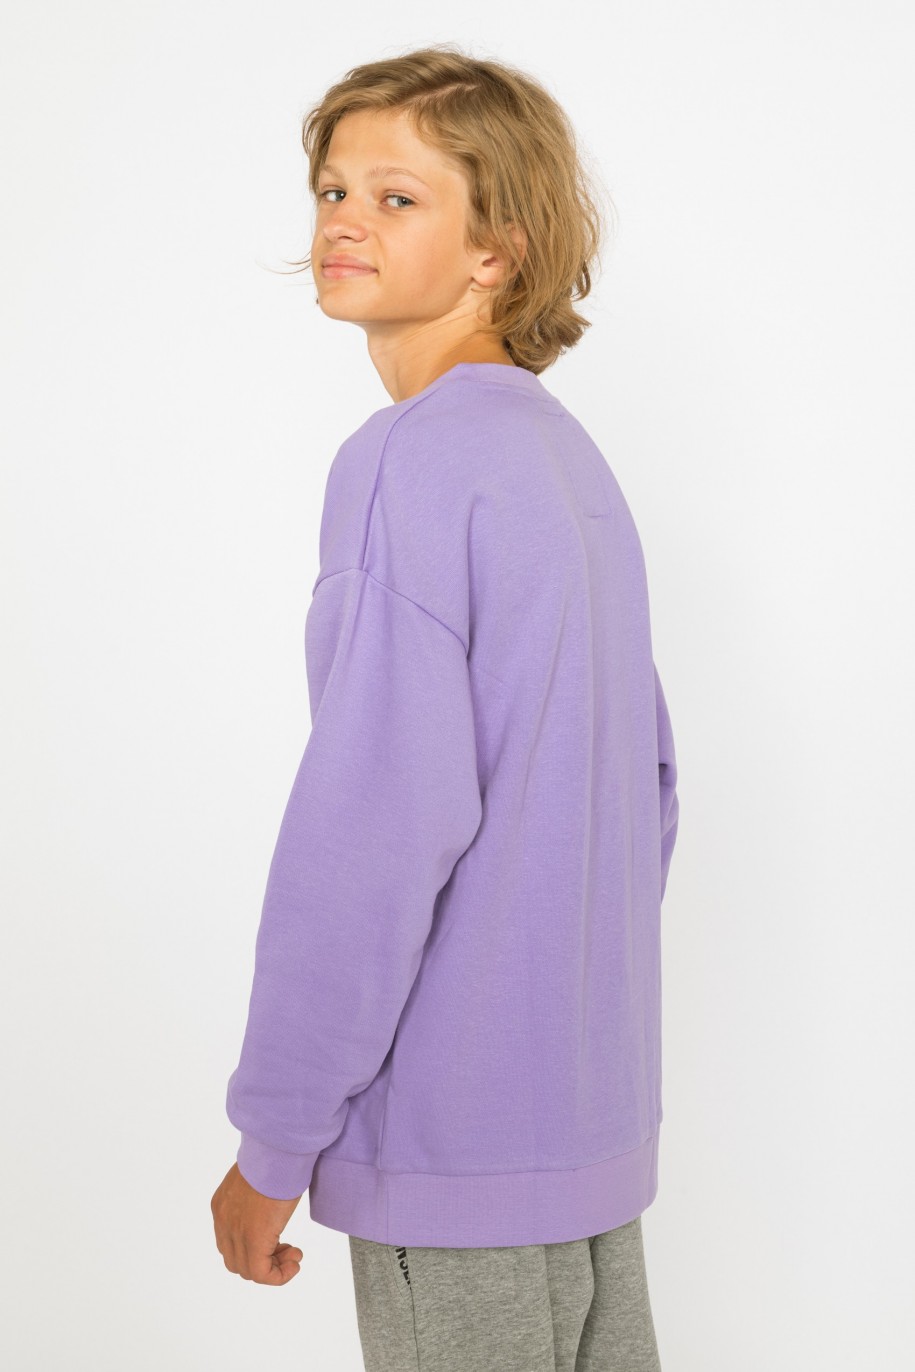 Fioletowa bluza dla chłopaka OVERTHINKING - 30682